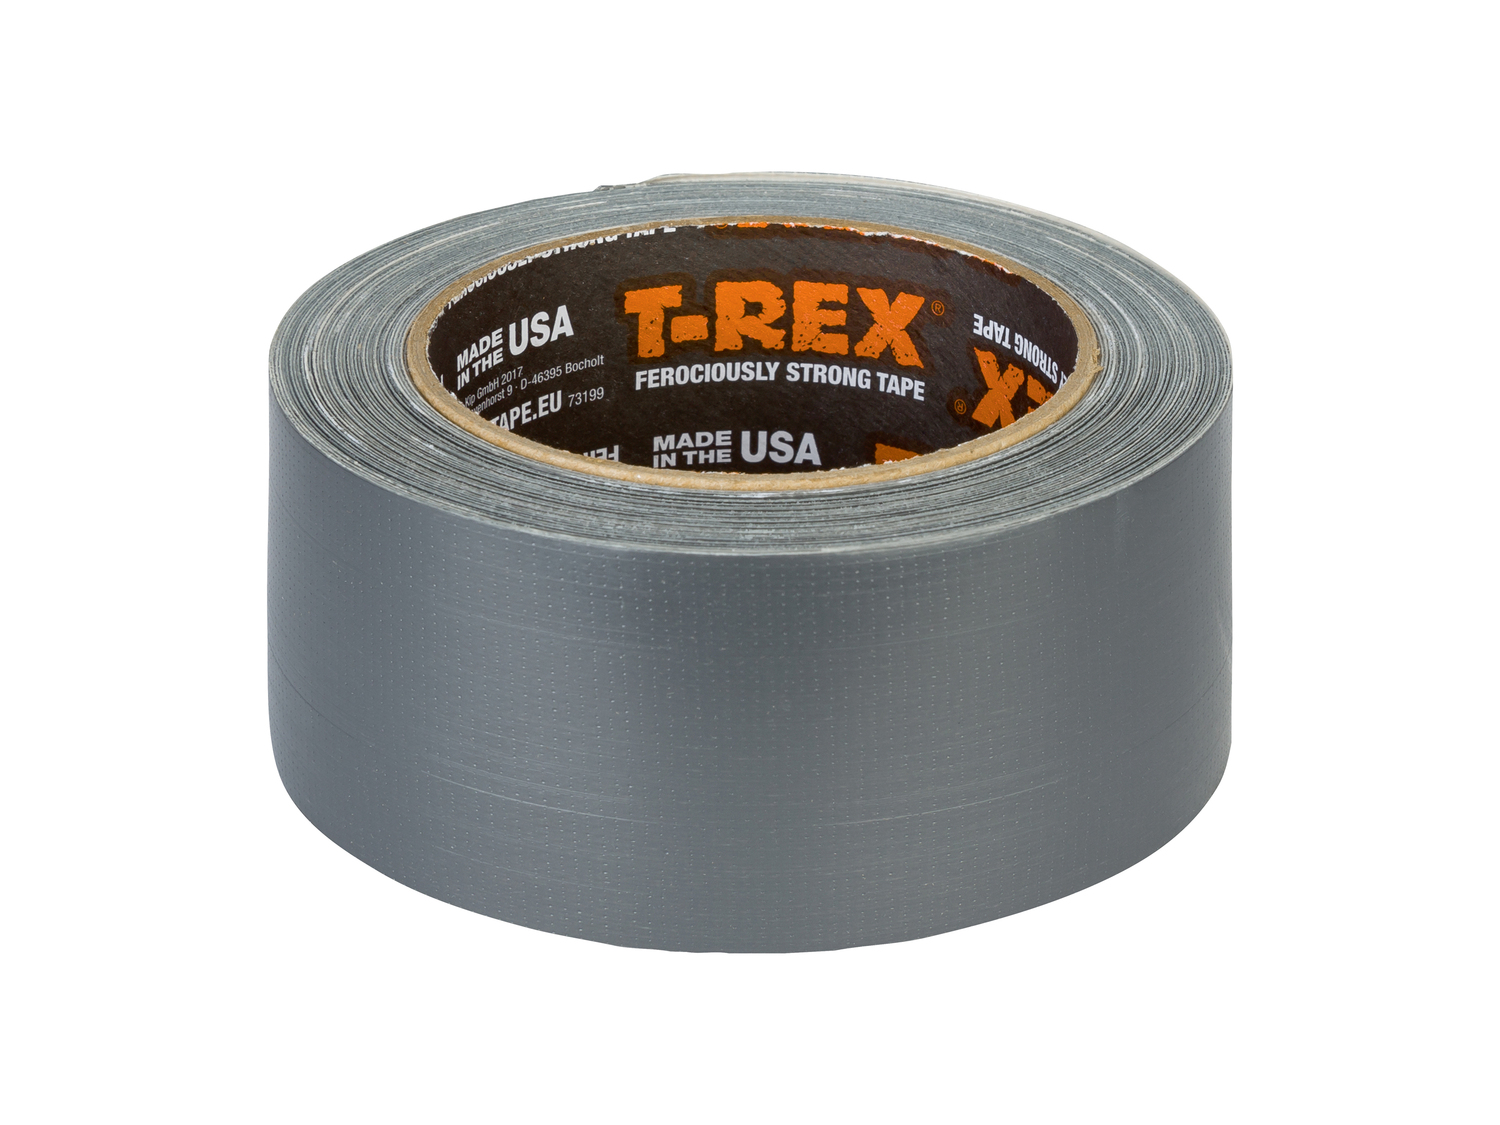 Nastro adesivo T-rex, prezzo 9.99 &#8364;  
-  50 mm x 1,5 m
Caratteristiche